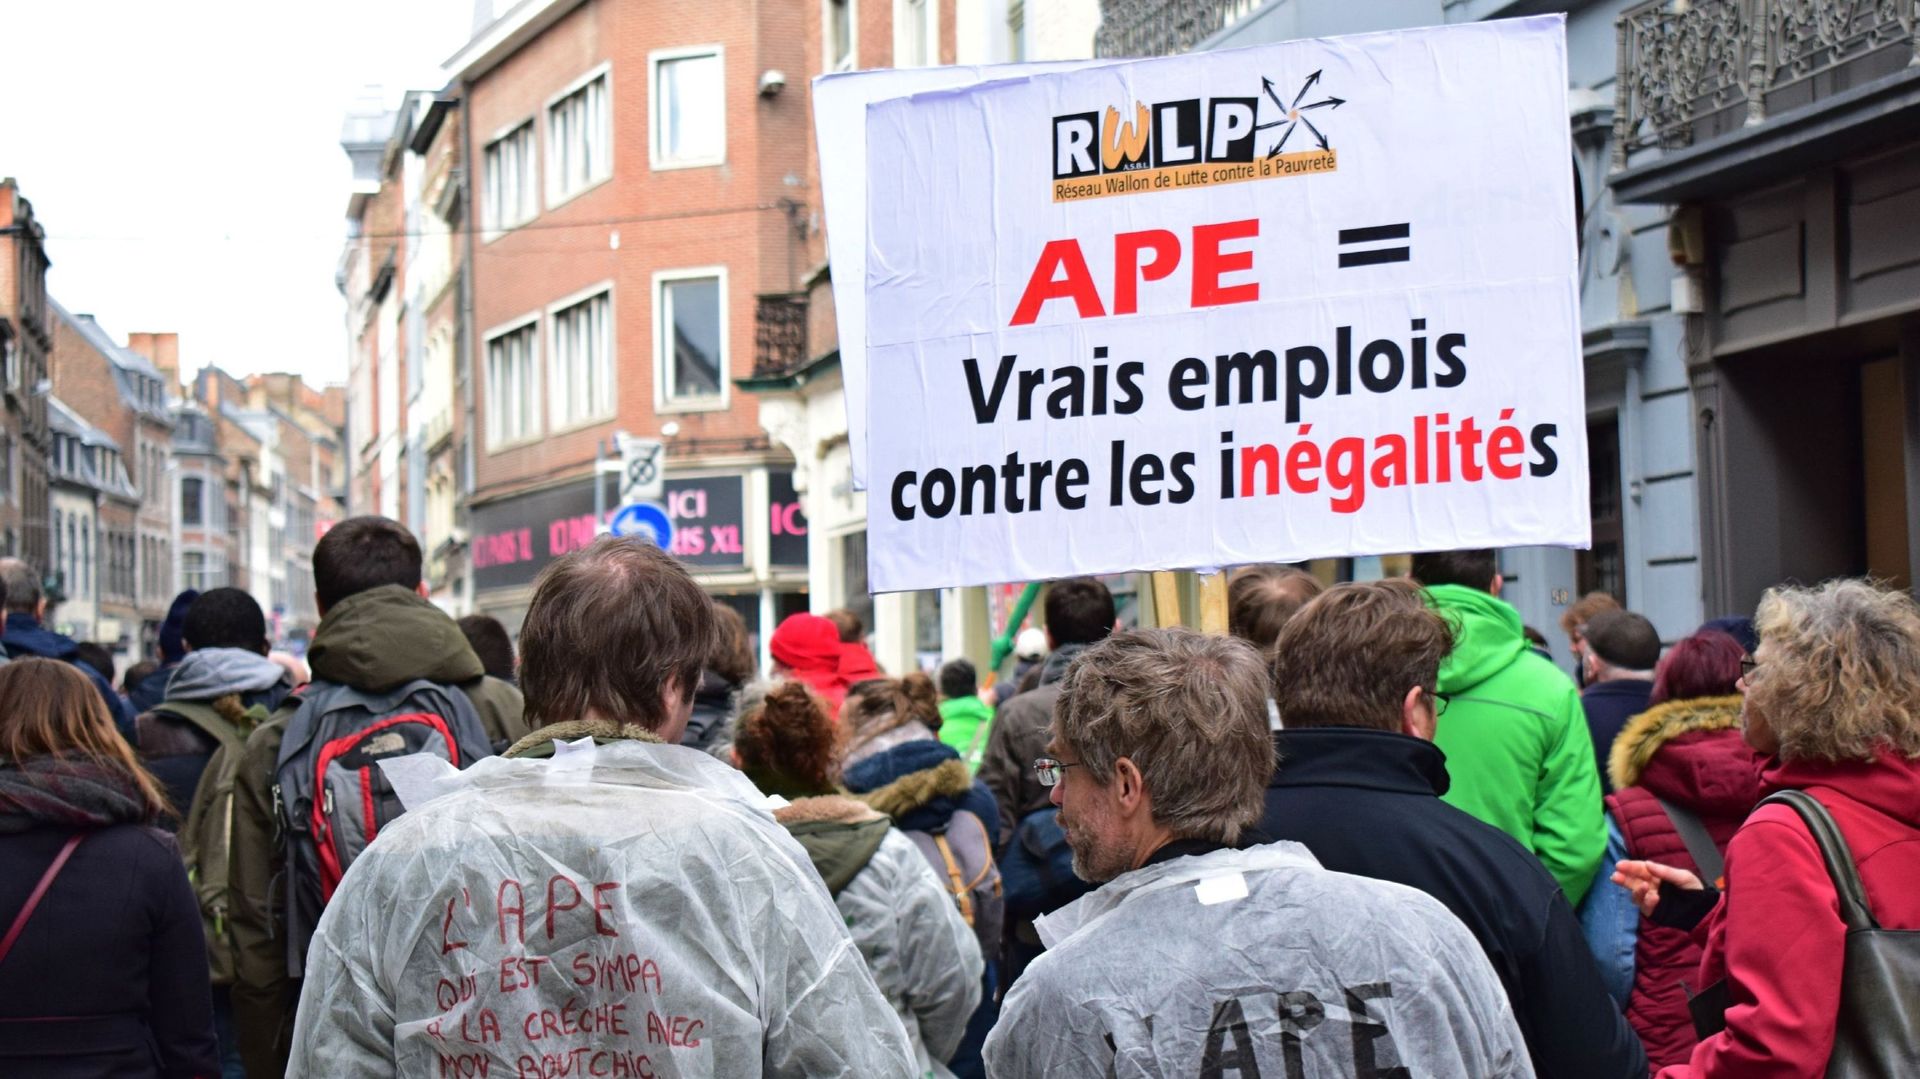 La réforme des APE enterrée: "Une victoire pour les 62.000 travailleurs", salue le PS